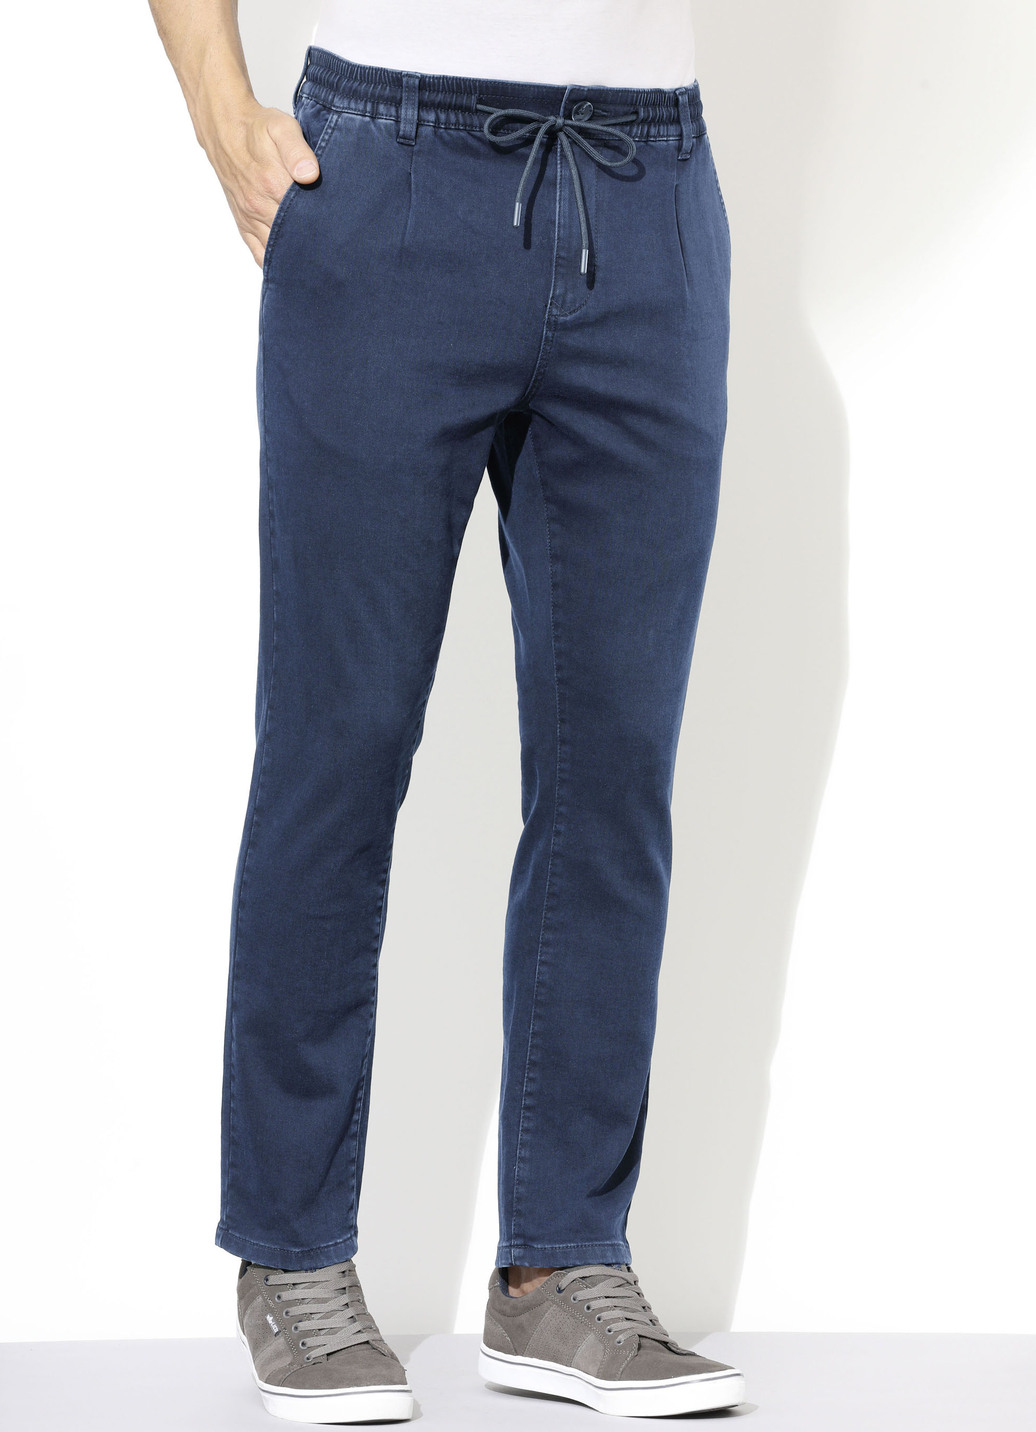 Superstretch-Jeans in 3 Farben, Jeansblau, Größe 31 von DANNECKER